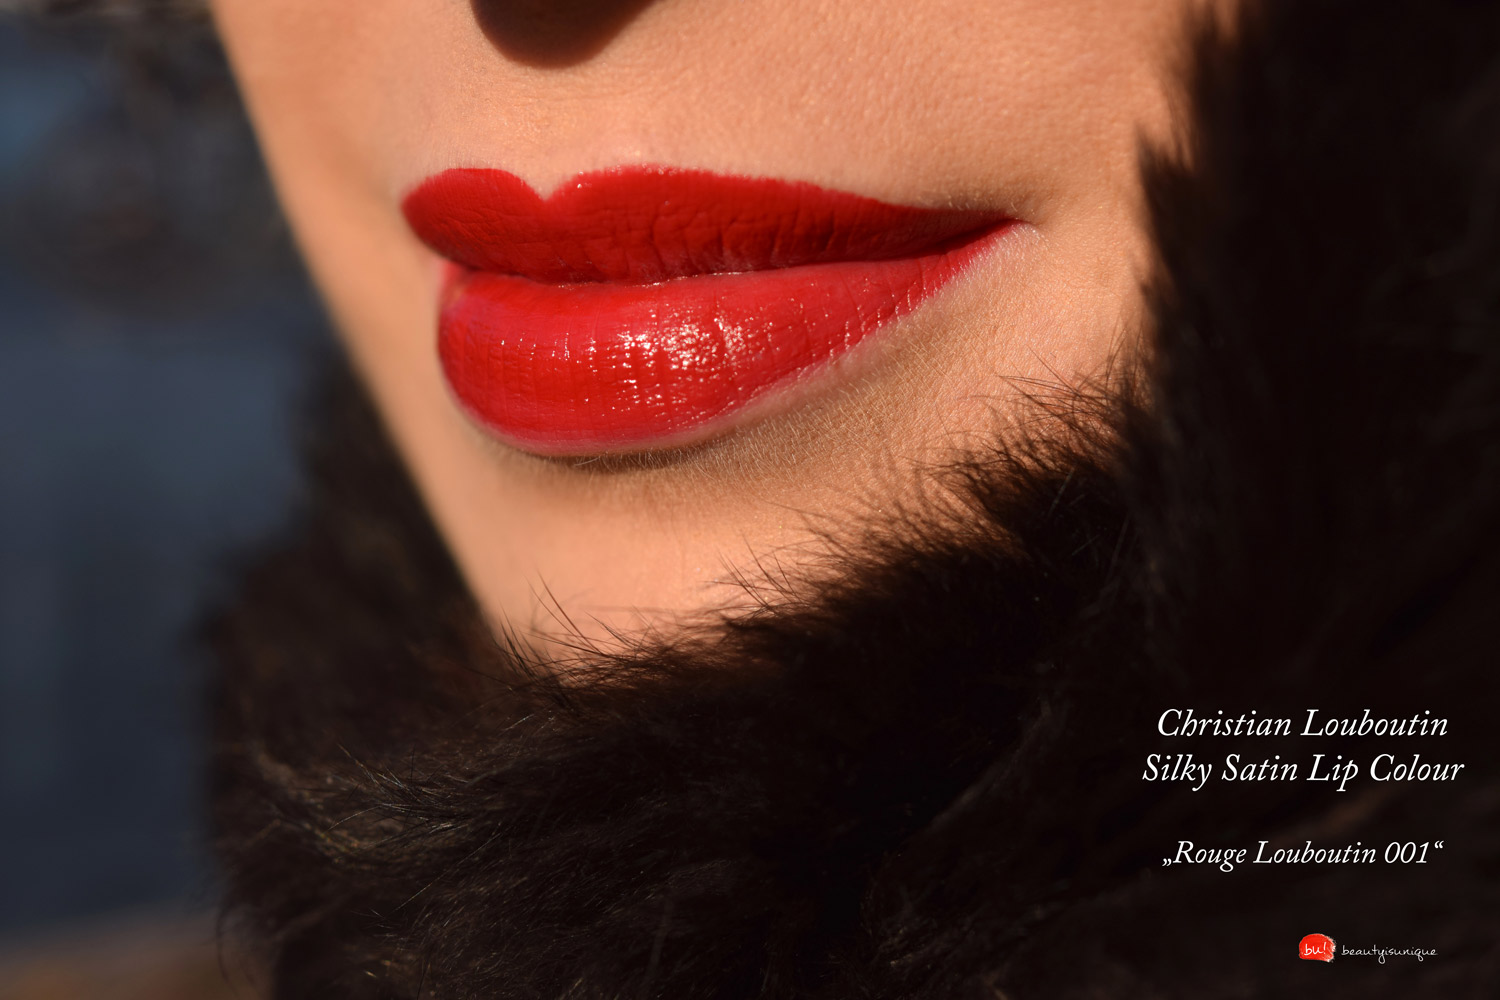 Christian-louboutin-silky-satin-lip-colour-rouge-louboutin-001-swatches